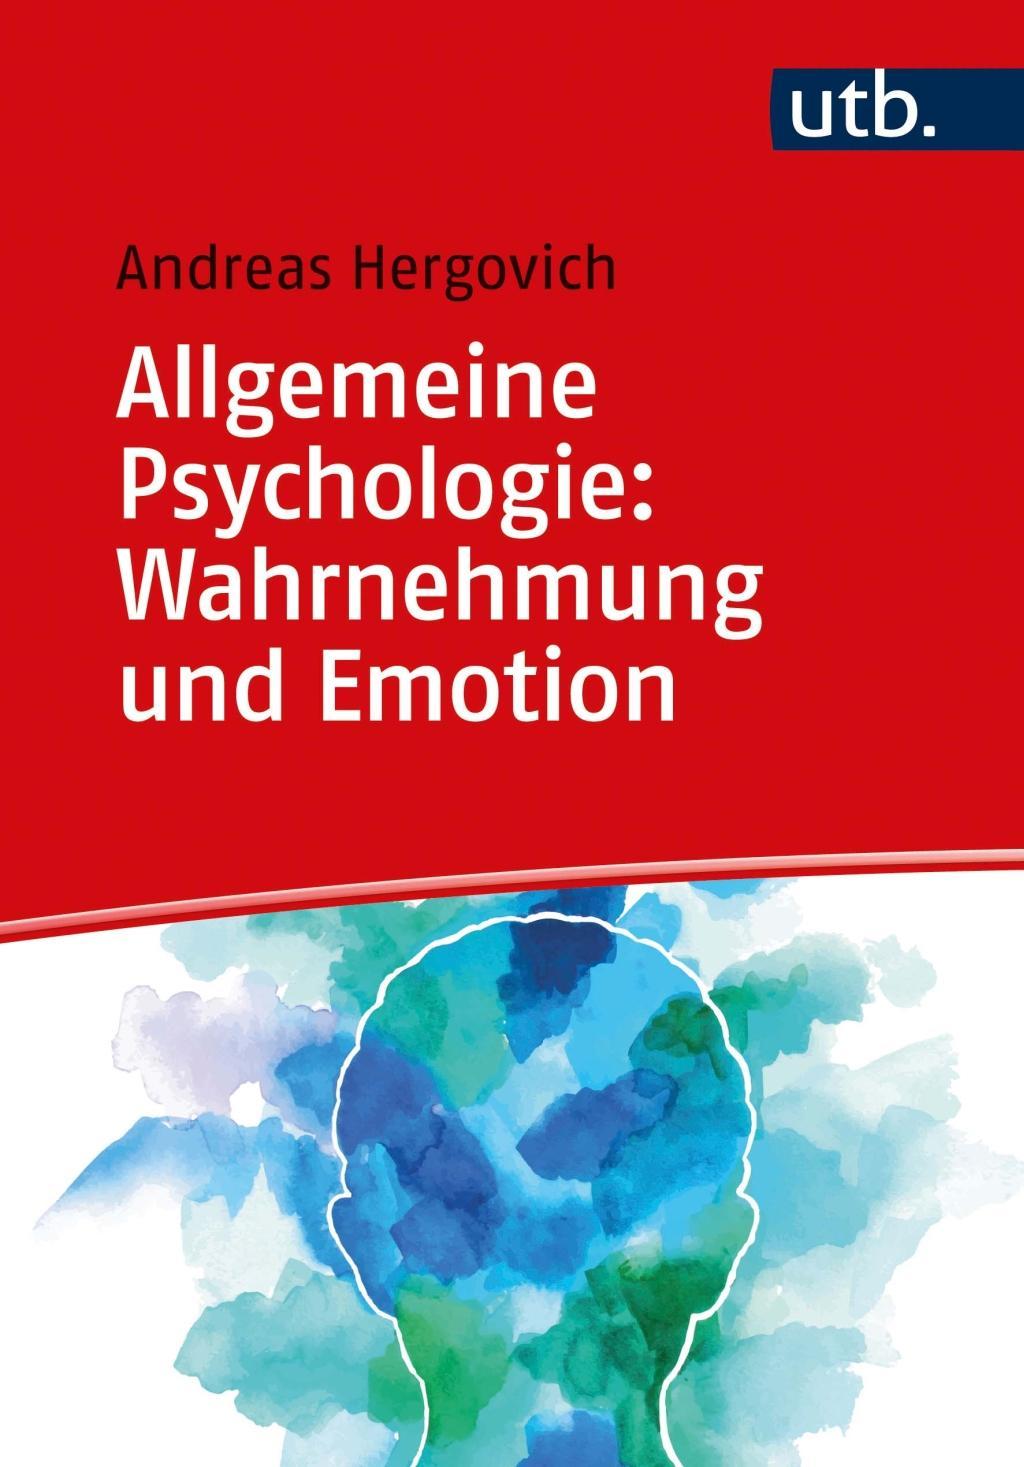 Carte Allgemeine Psychologie: Wahrnehmung und Emotion Andreas Hergovich